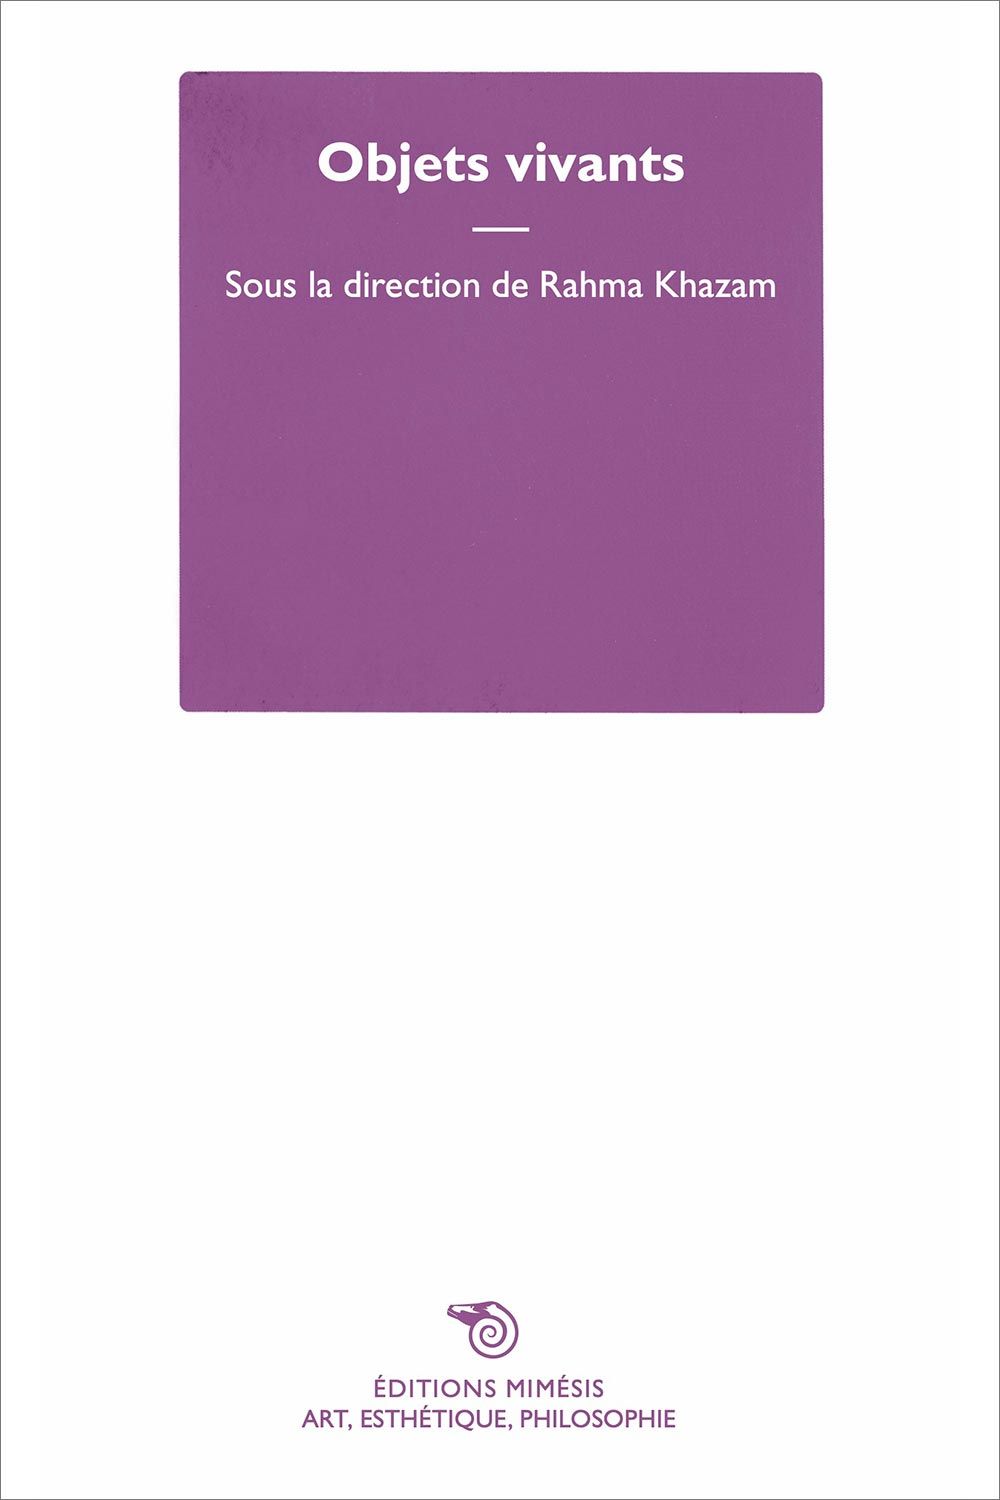 Rahma Khazam (dir.), Objets vivants